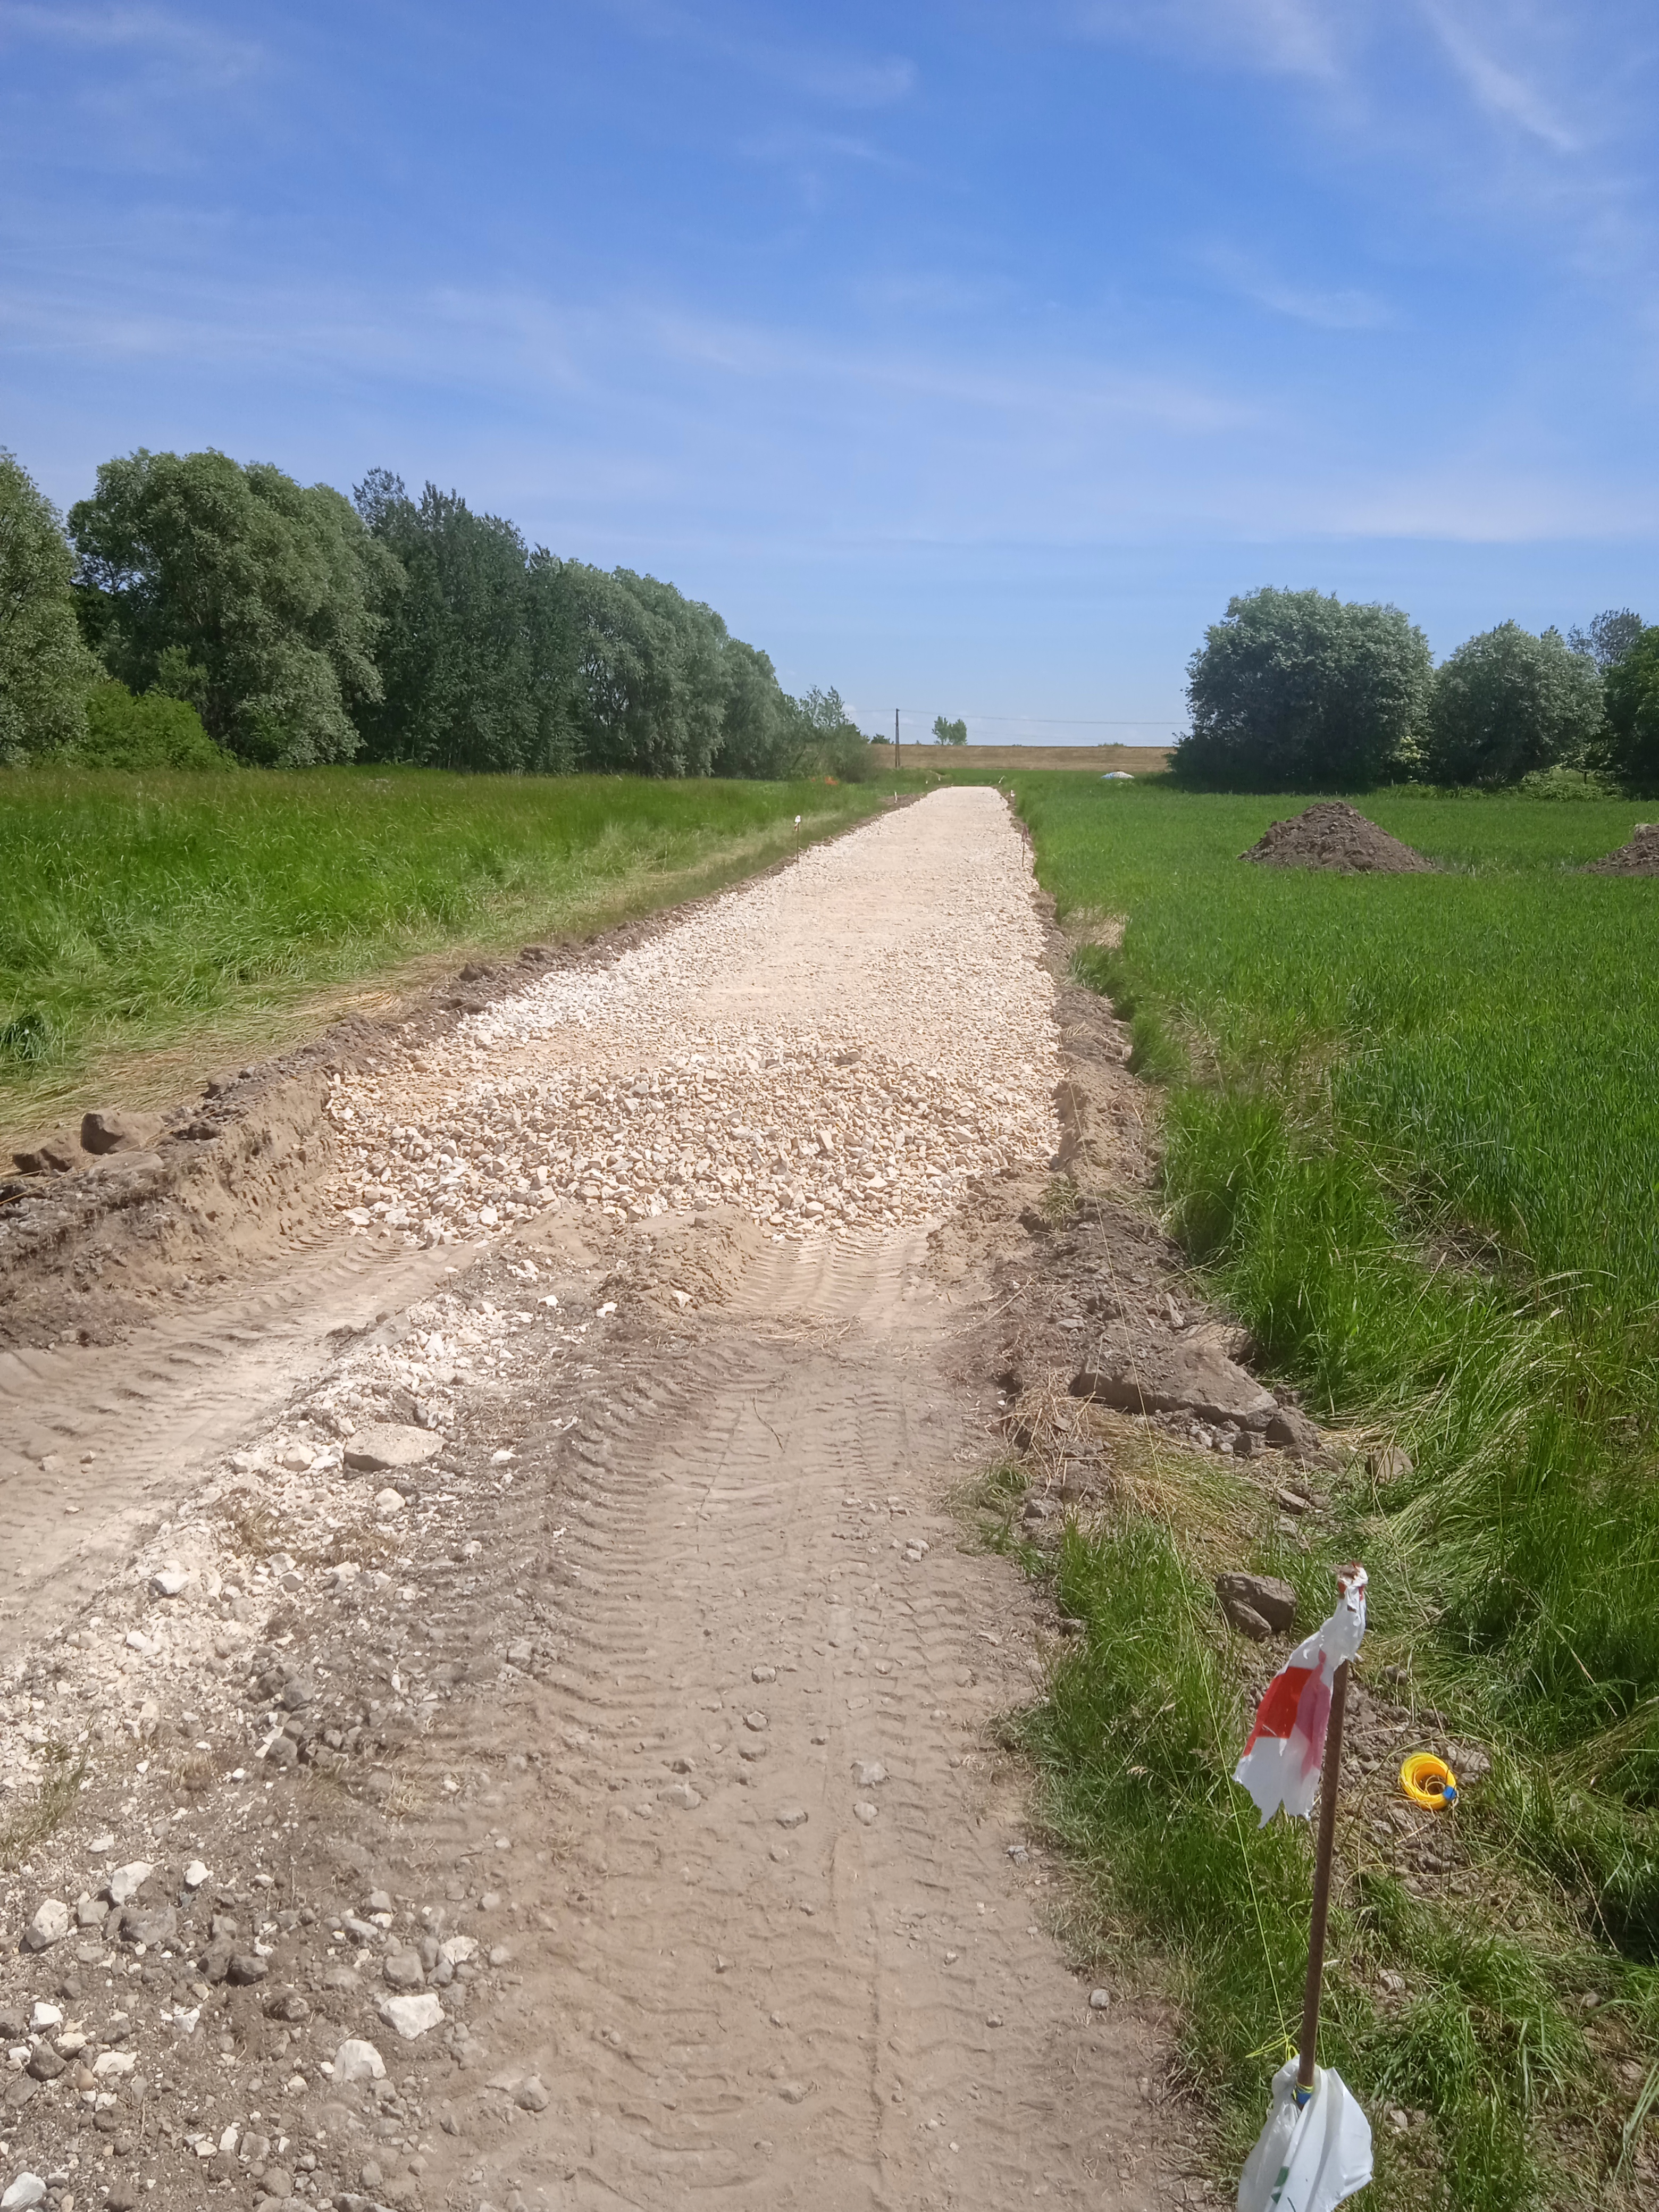 zdjęcie przedstawia drogę polną w miejscowości Wola Rogowska w trakcie modernizacji, częściowo utwardzoną kamieniem.